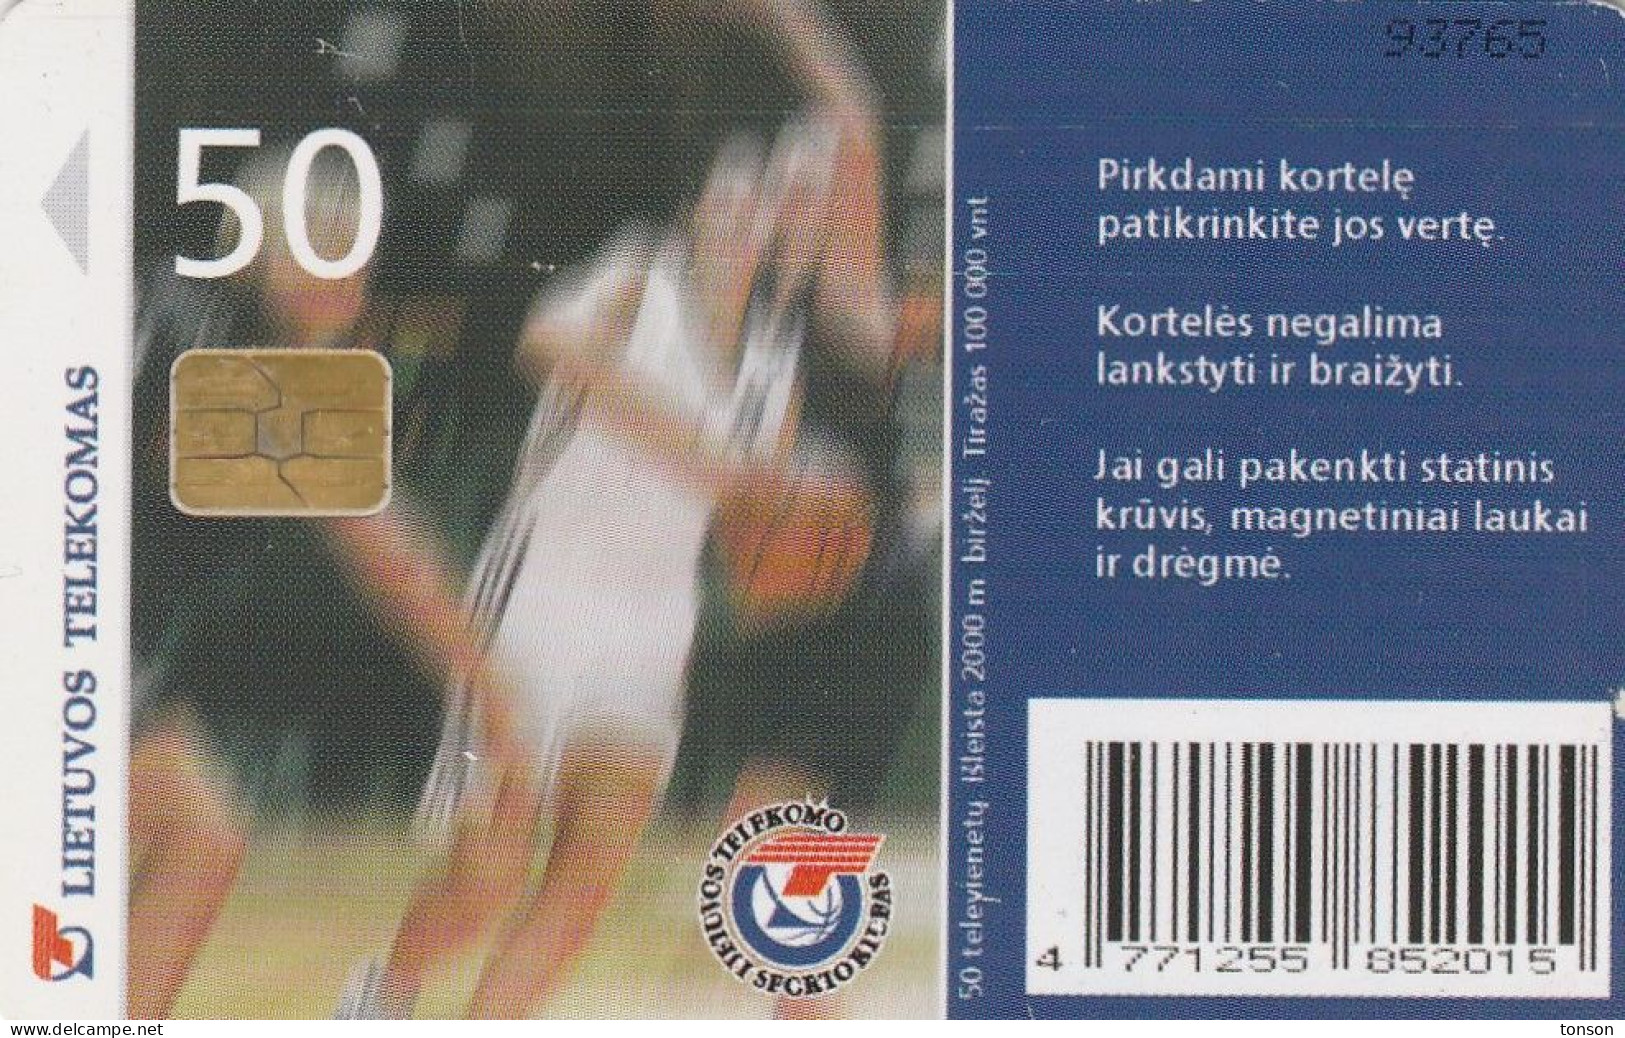 Lithuania, LTU-C48, Lietuvos Telekomas Basket-Ball Team, 2 Scans. - Litauen